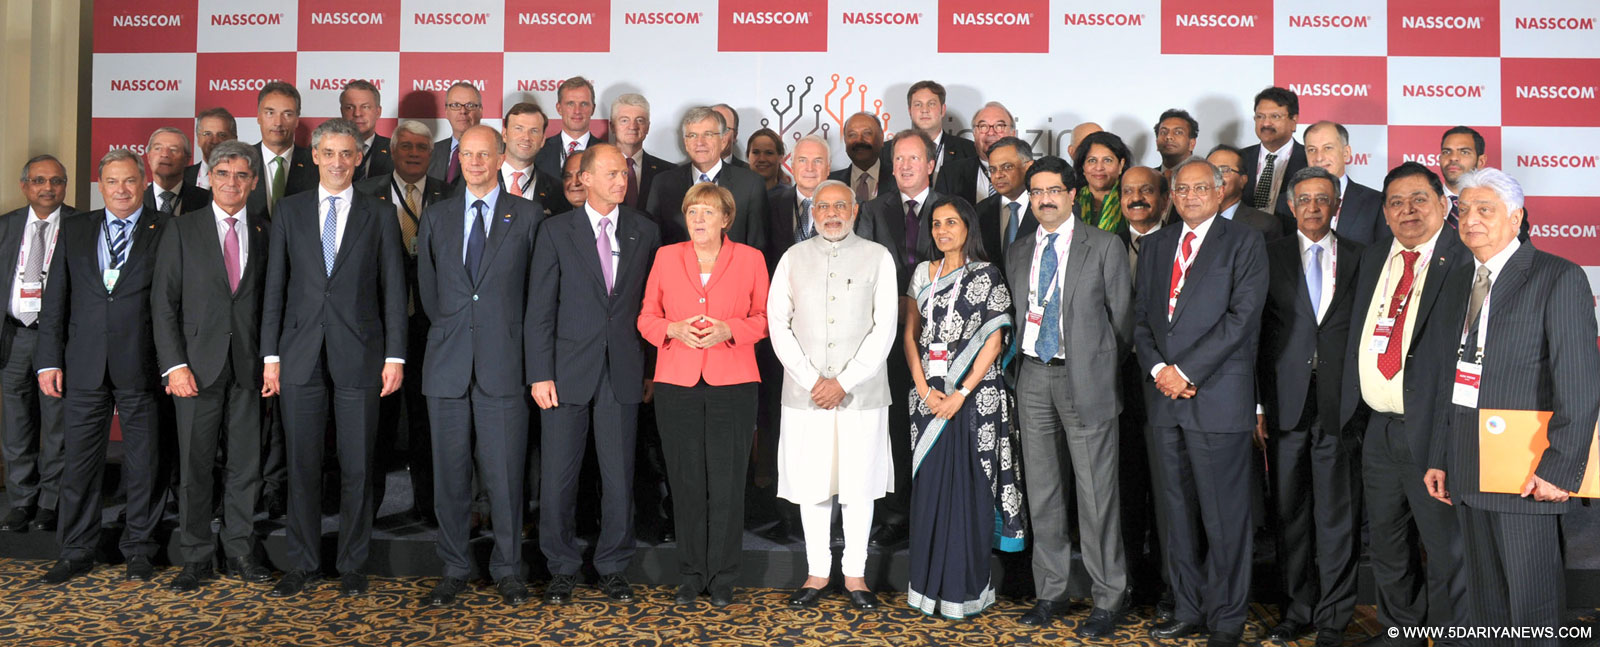 Narender Modi, Merkel seek to give economic muscle to Indo-German ties